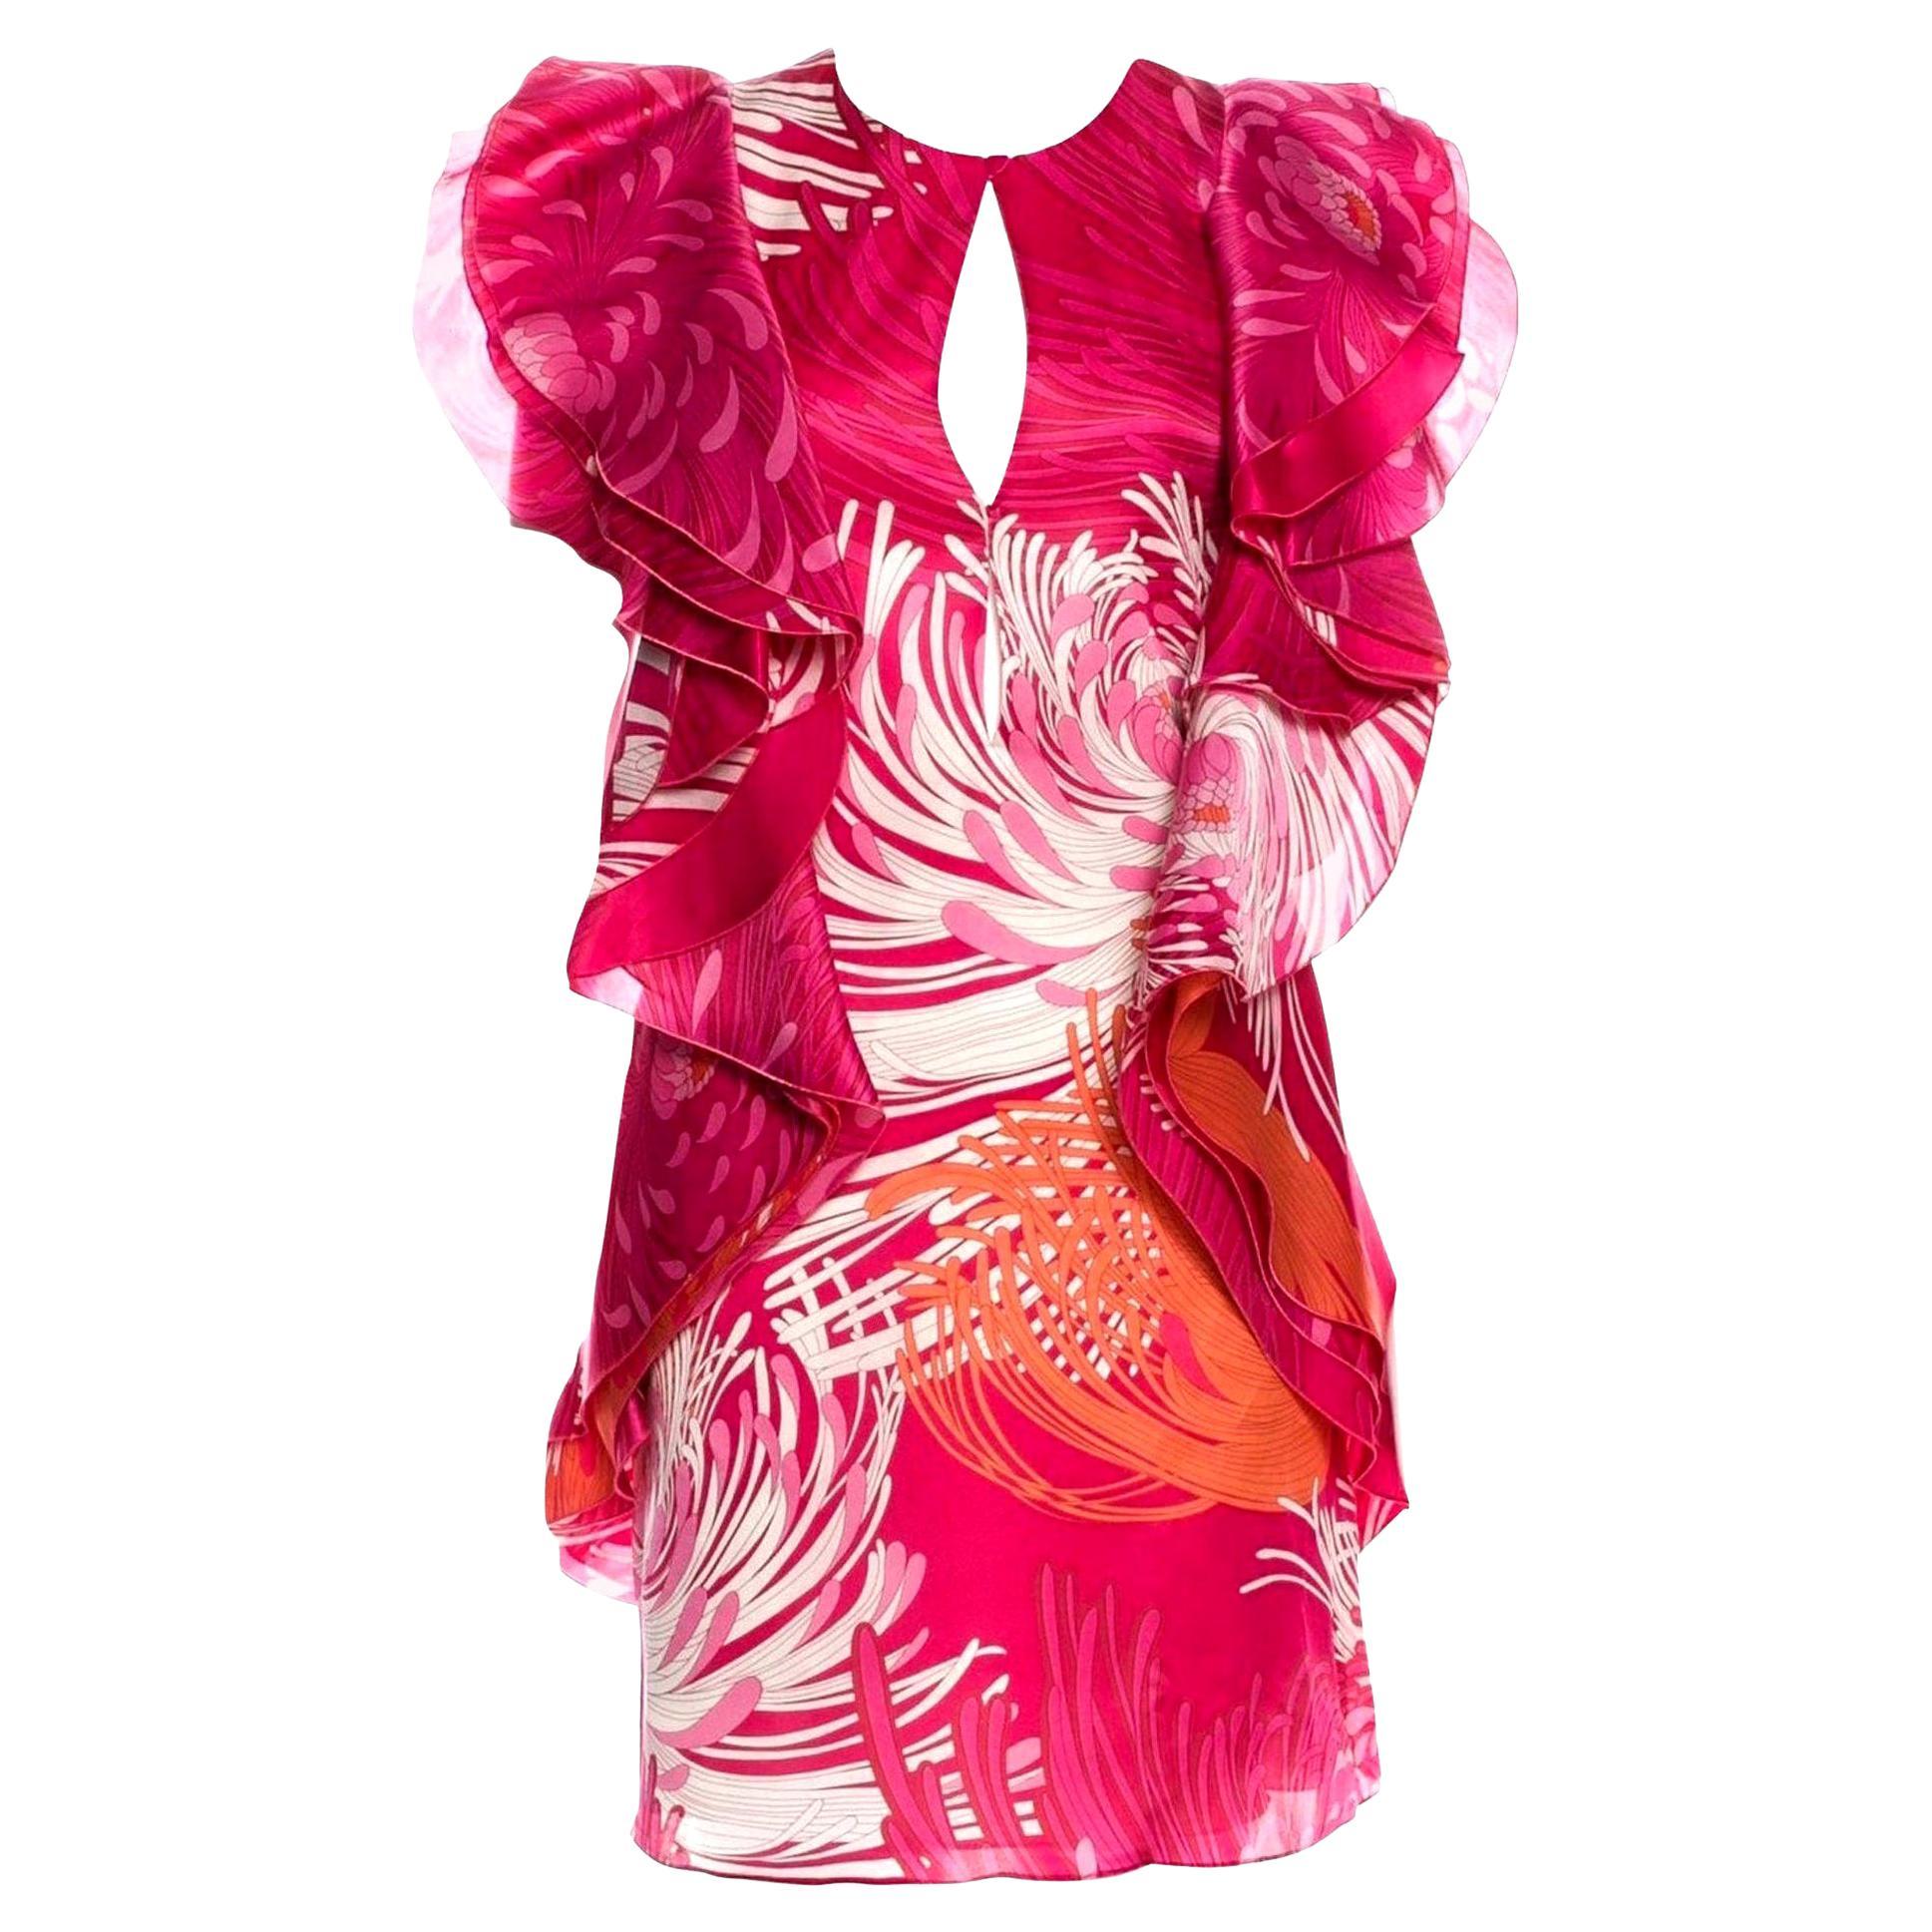 New Rare Gucci Runway Ad Silk Dress S/S 2013 Sz 40 $3499